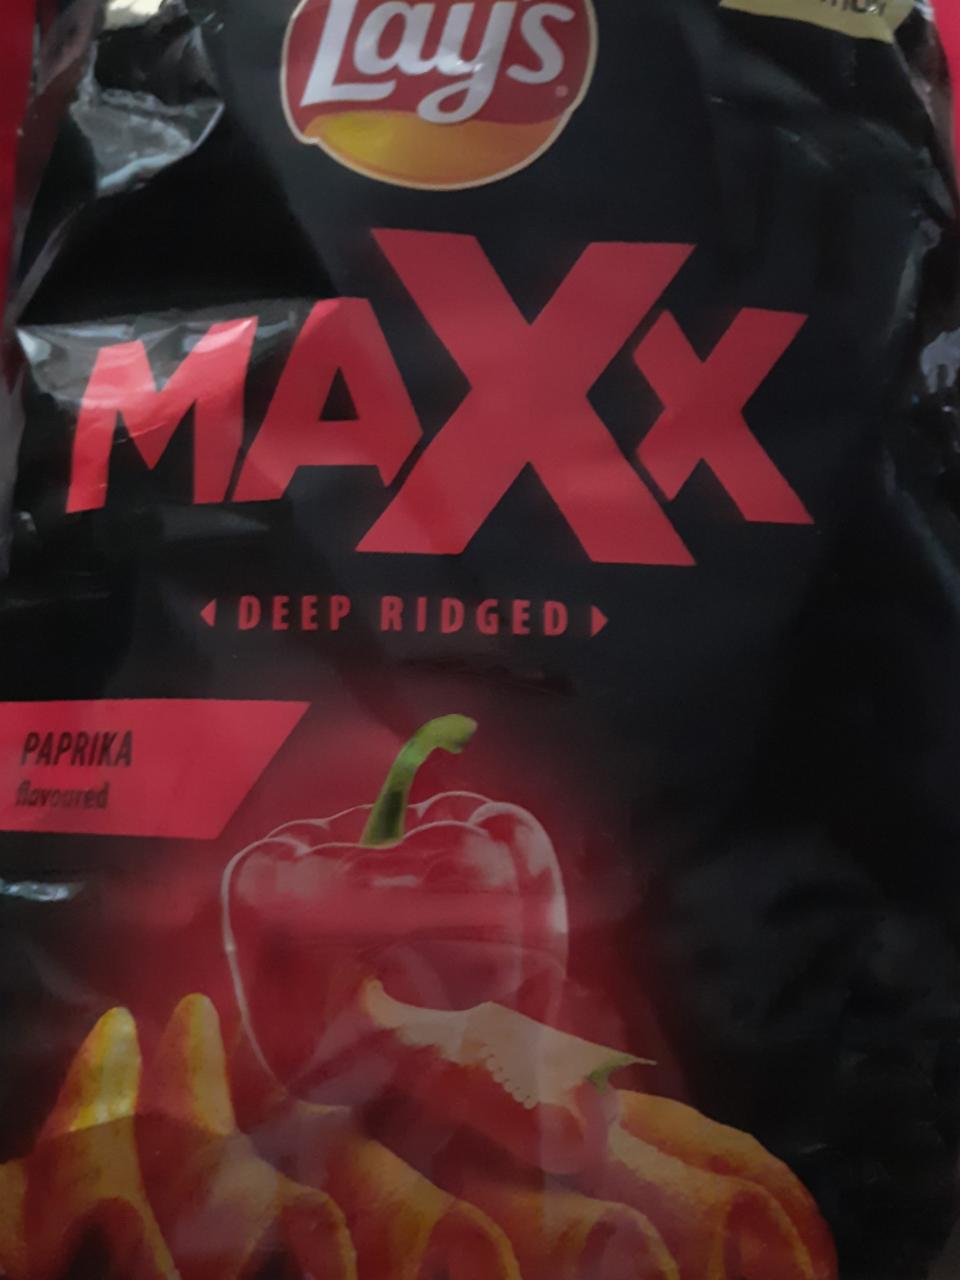 Zdjęcia - chipsy lays maxx deep ridged paprika